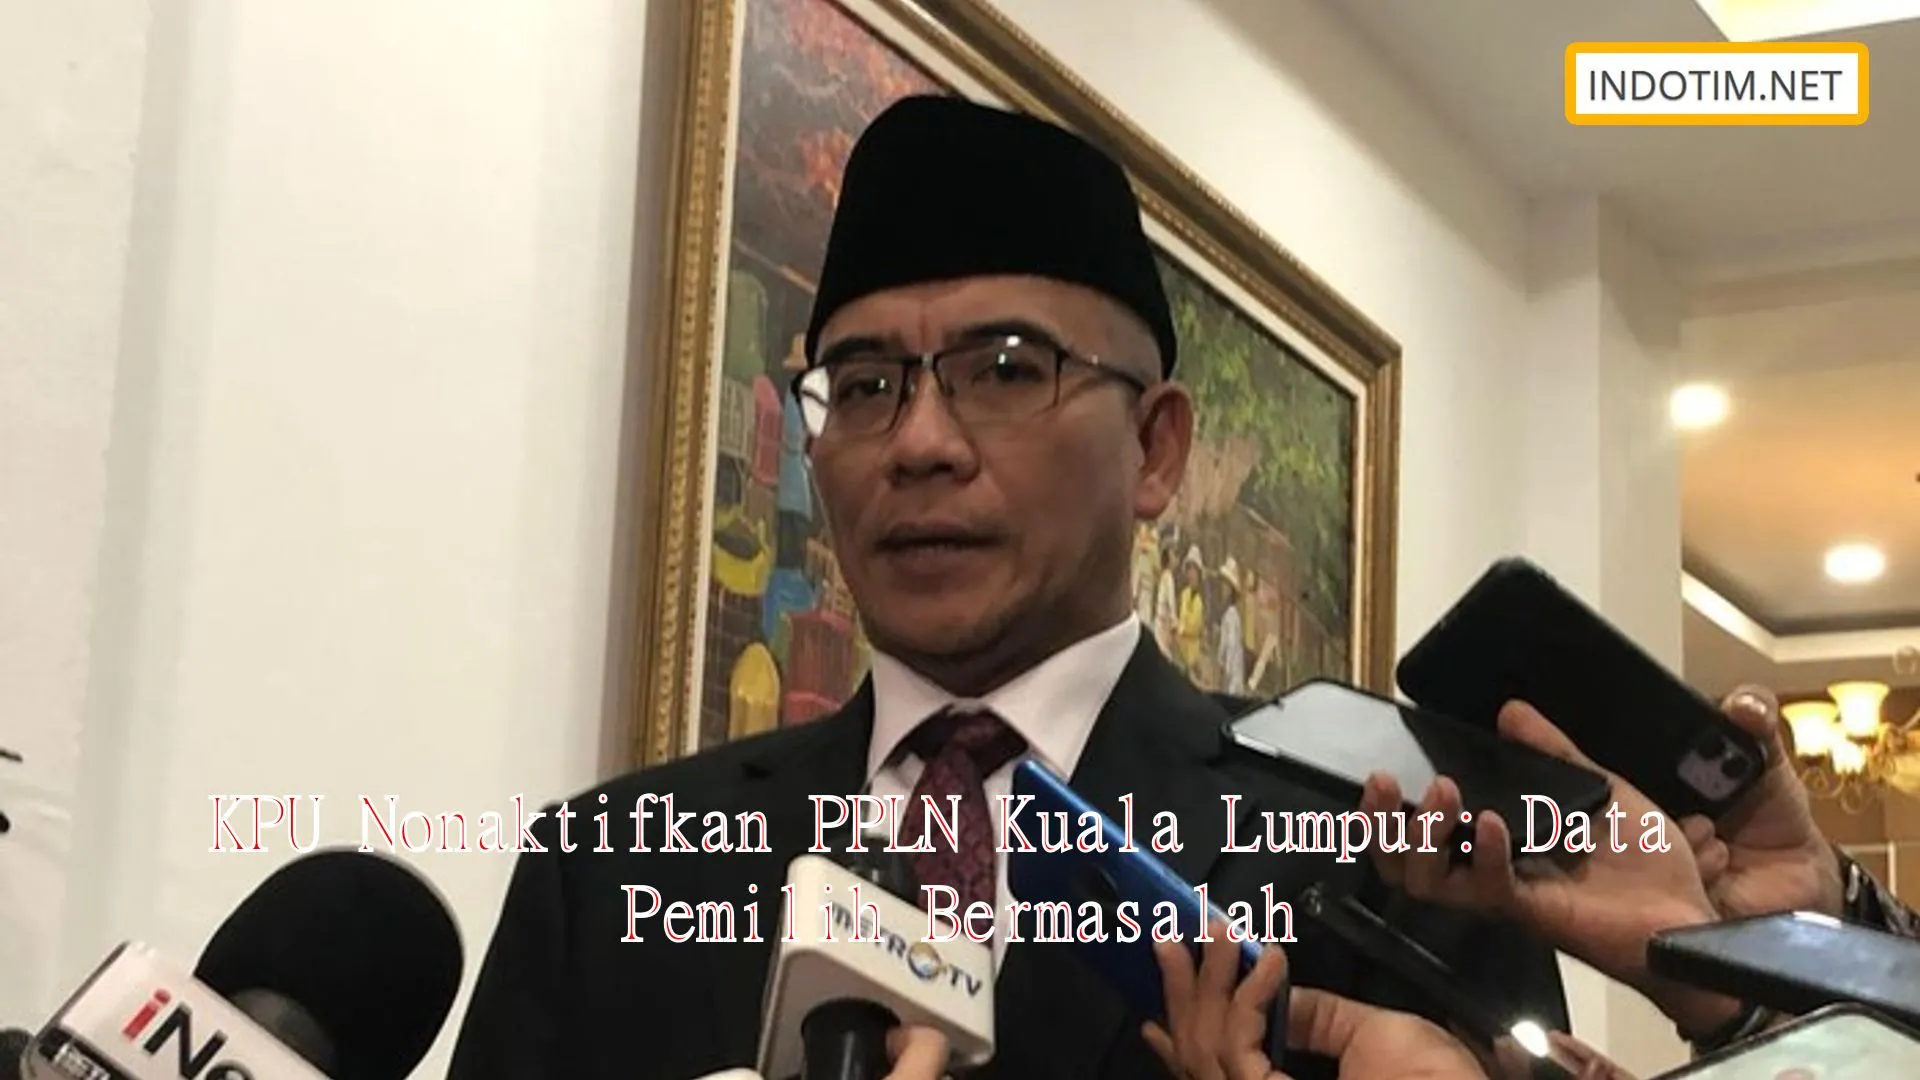 KPU Nonaktifkan PPLN Kuala Lumpur: Data Pemilih Bermasalah